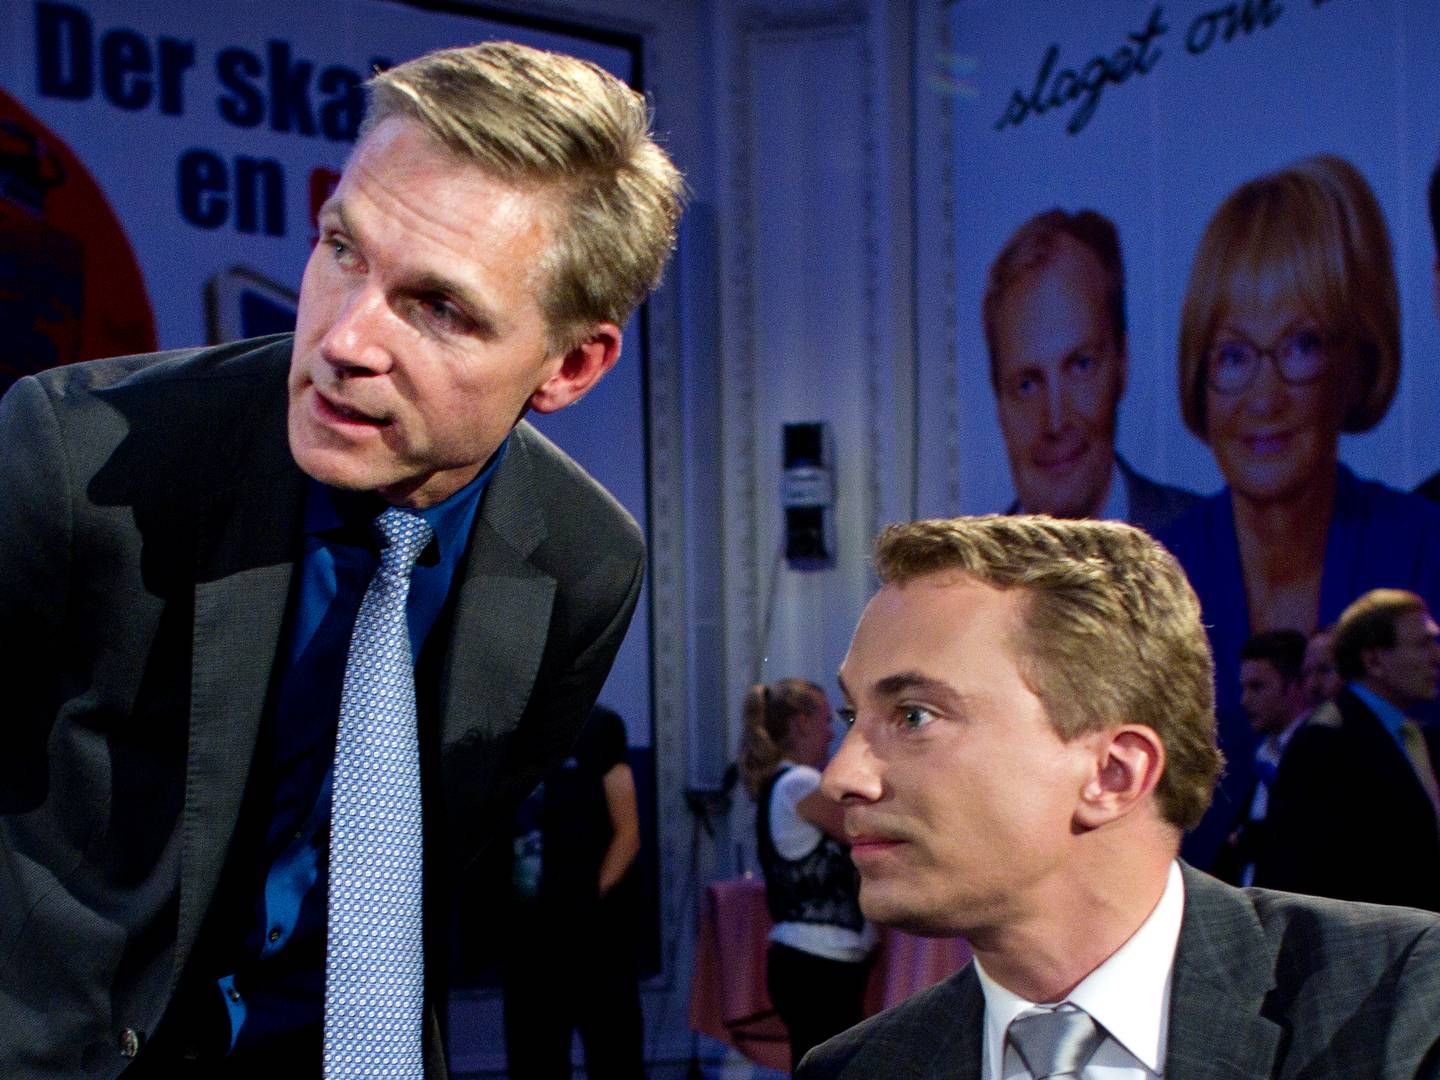 Formand Kristian Thulesen Dahl og MEP Morten Messerschmidt er alt for sent ude med deres kritik af DONG-aftalen med Goldman Sachs, vurderer professor. Foto: HOUGAARD NIELS